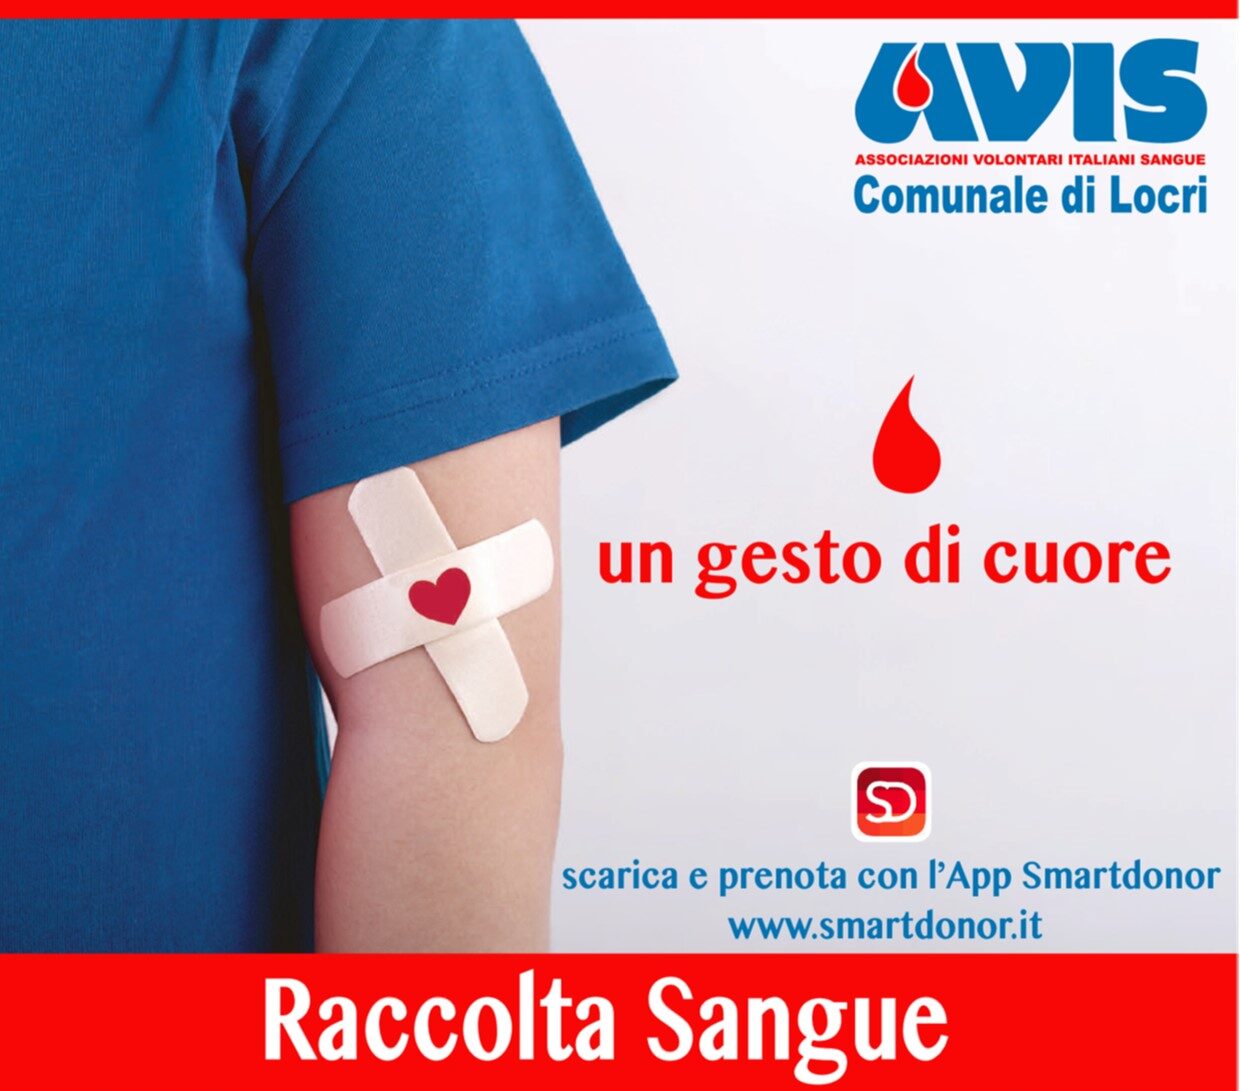 L’AVIS Comunale di Locri comunica le date delle raccolte di sangue per il mese di agosto 2022